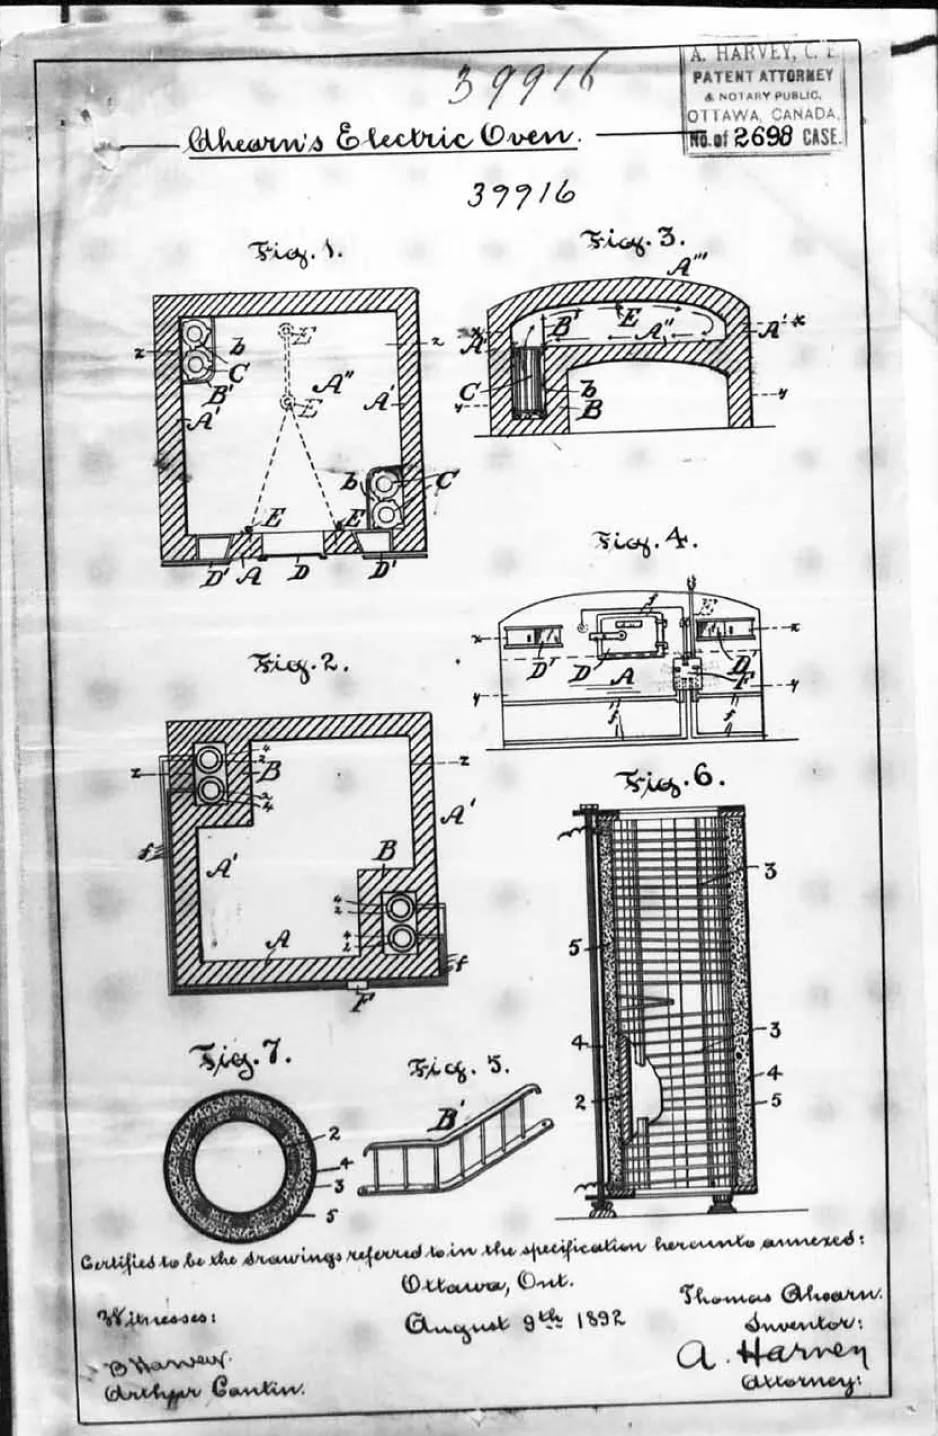 Le brevet de Thomas Ahearn pour un four électrique, 1892